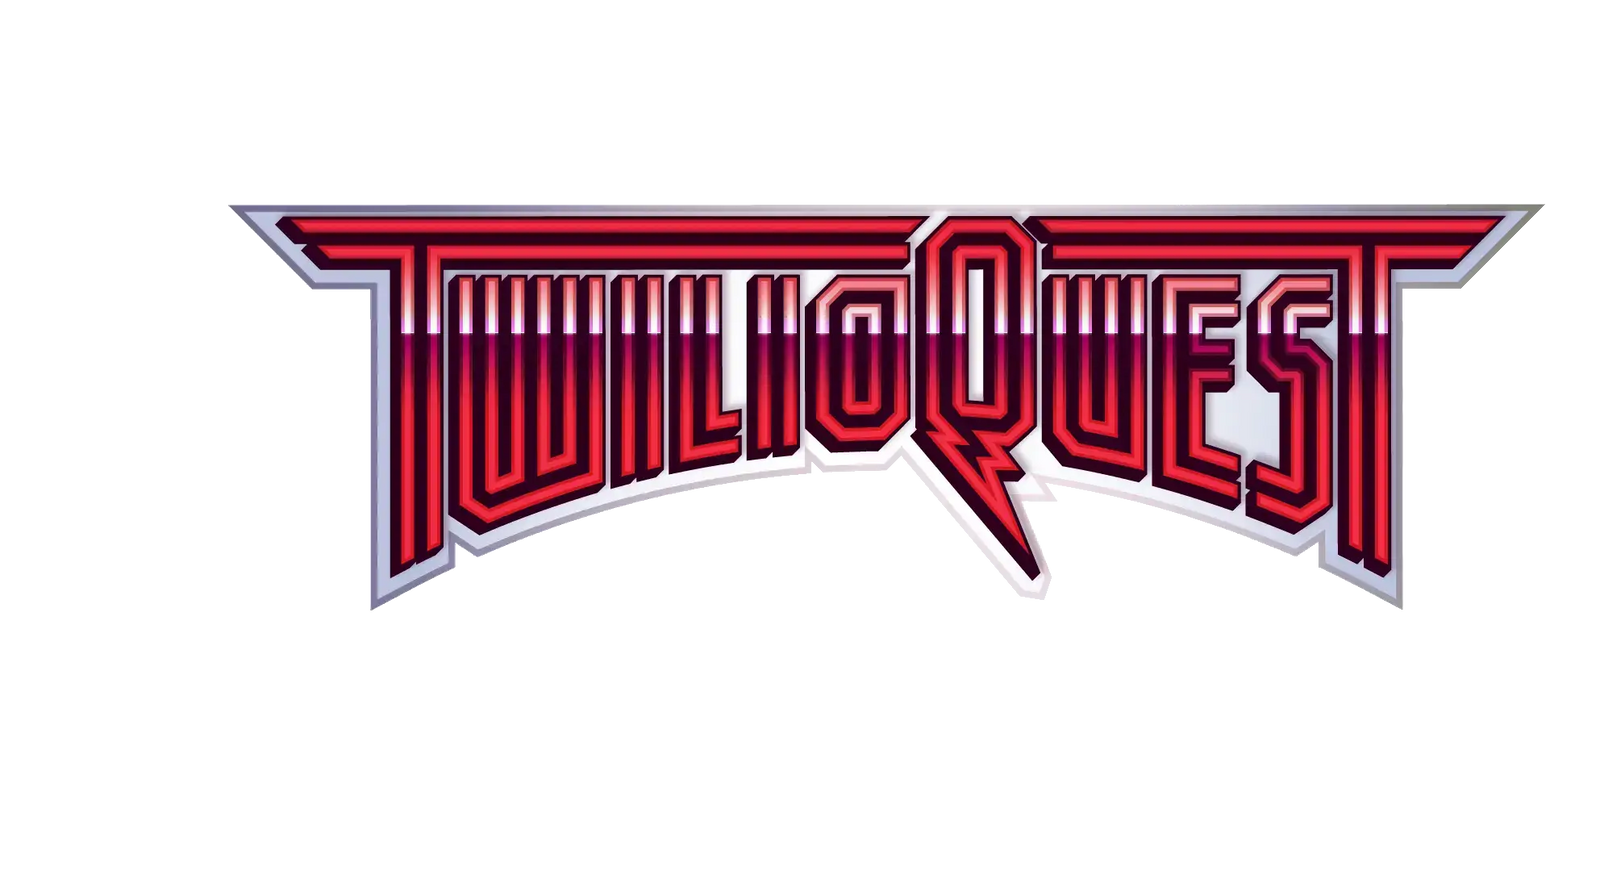 TwilioQuest logo